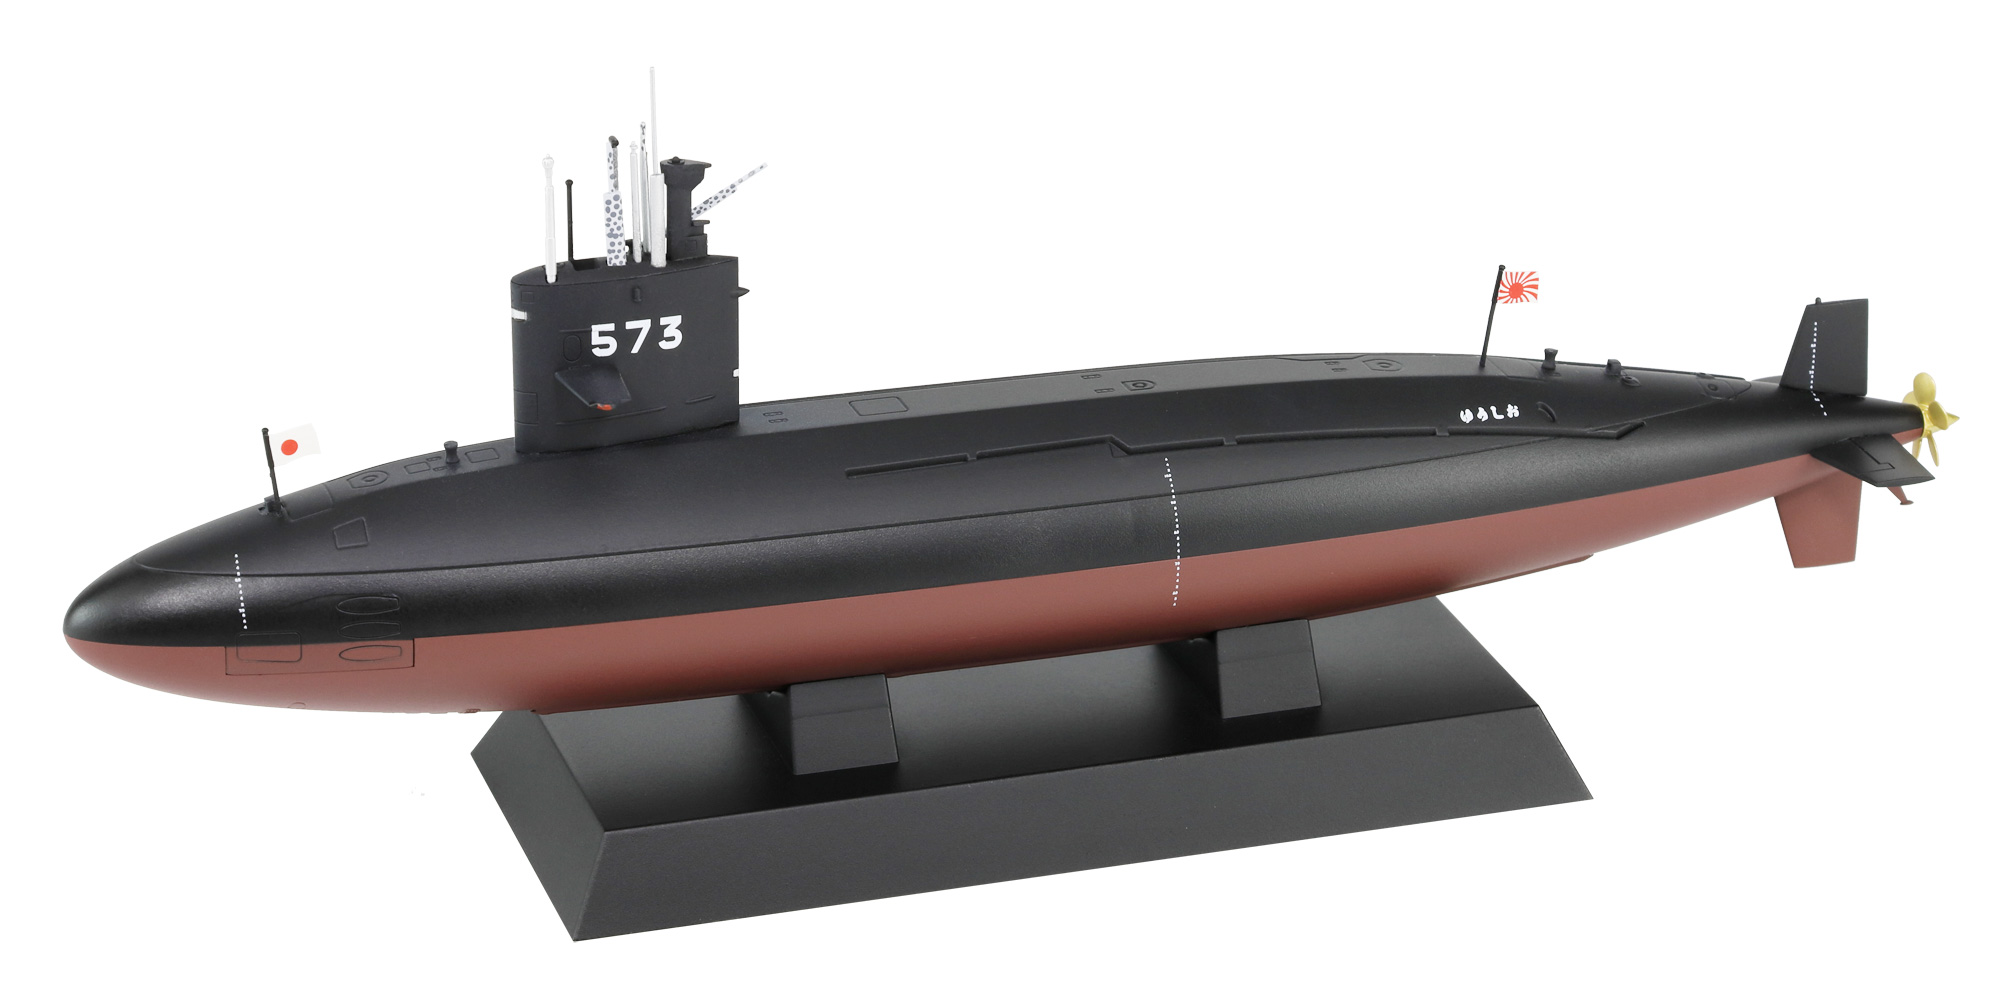 1/350　海上自衛隊 潜水艦 SS-573 ゆうしお